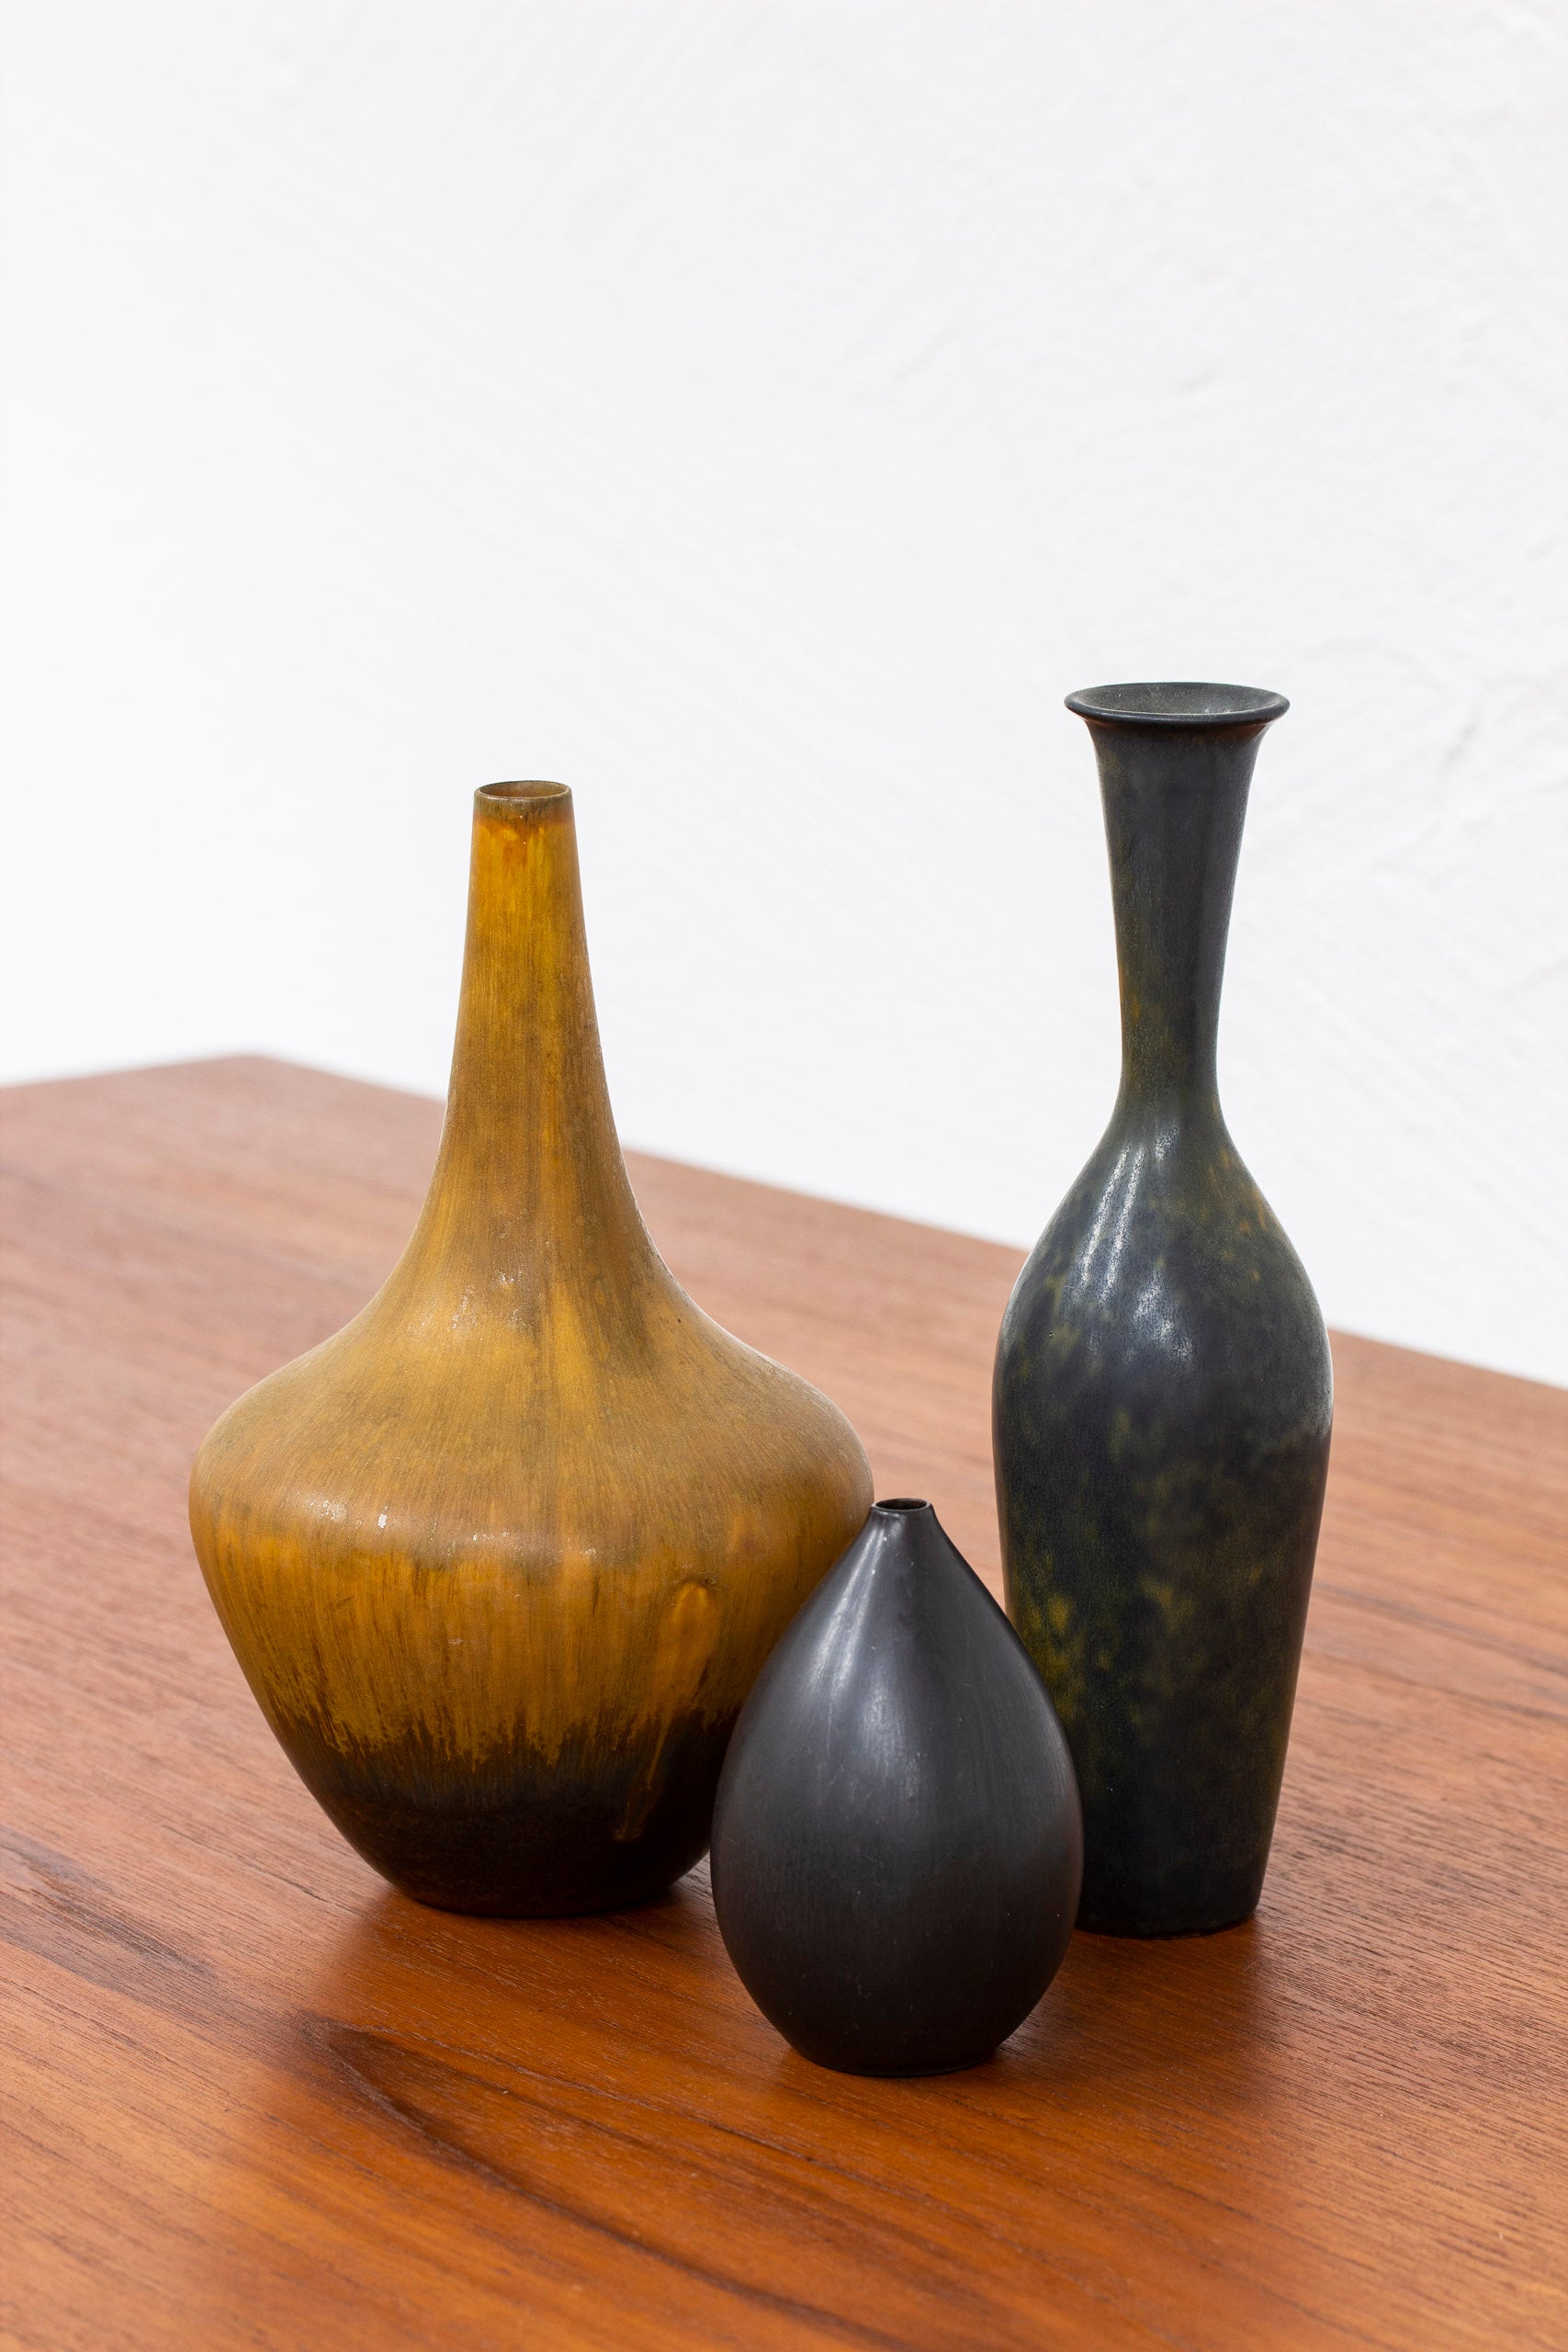 Black stoneware vase by Nylund